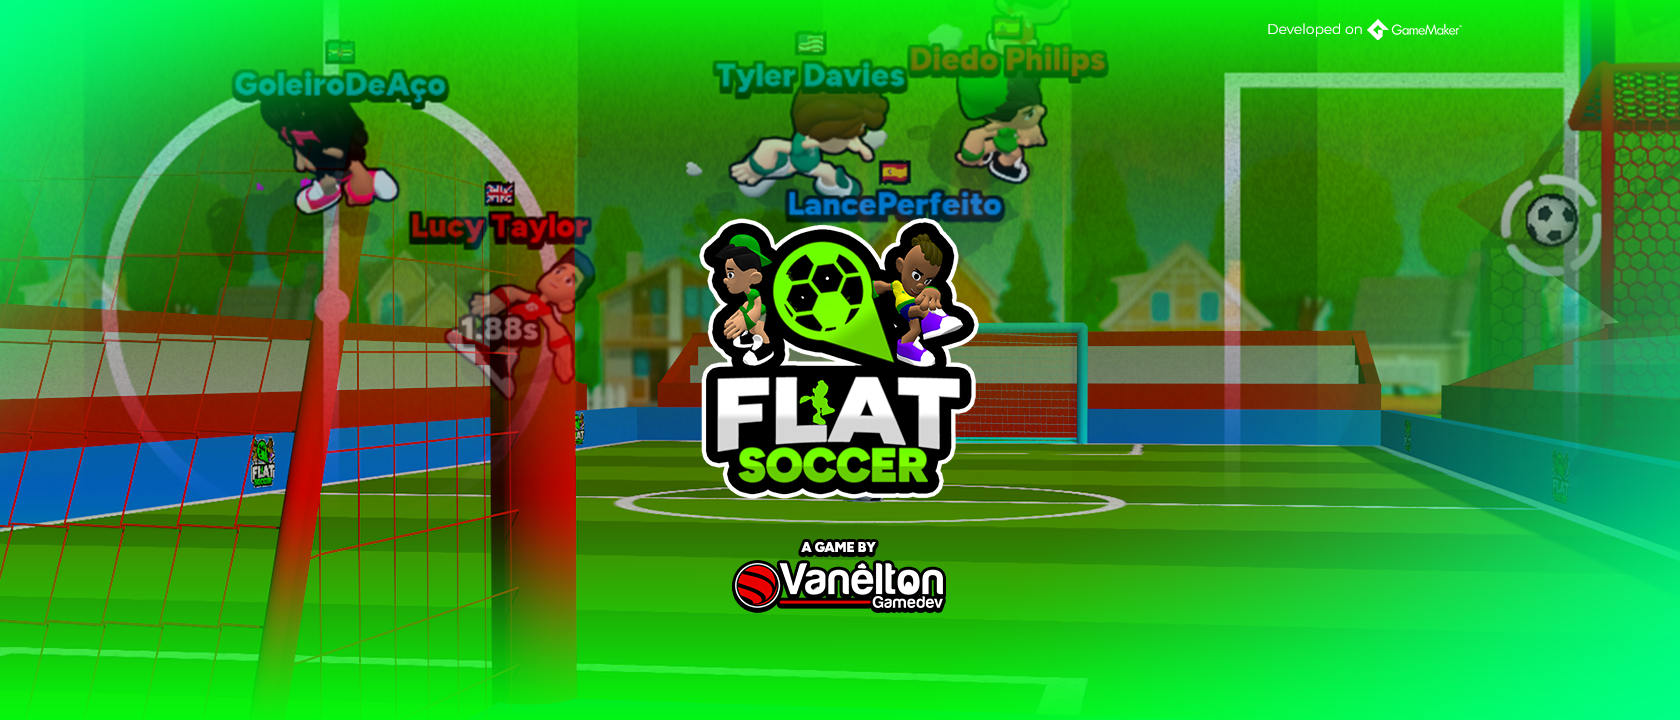 FlatSoccer: Online Multiplayer Soccer